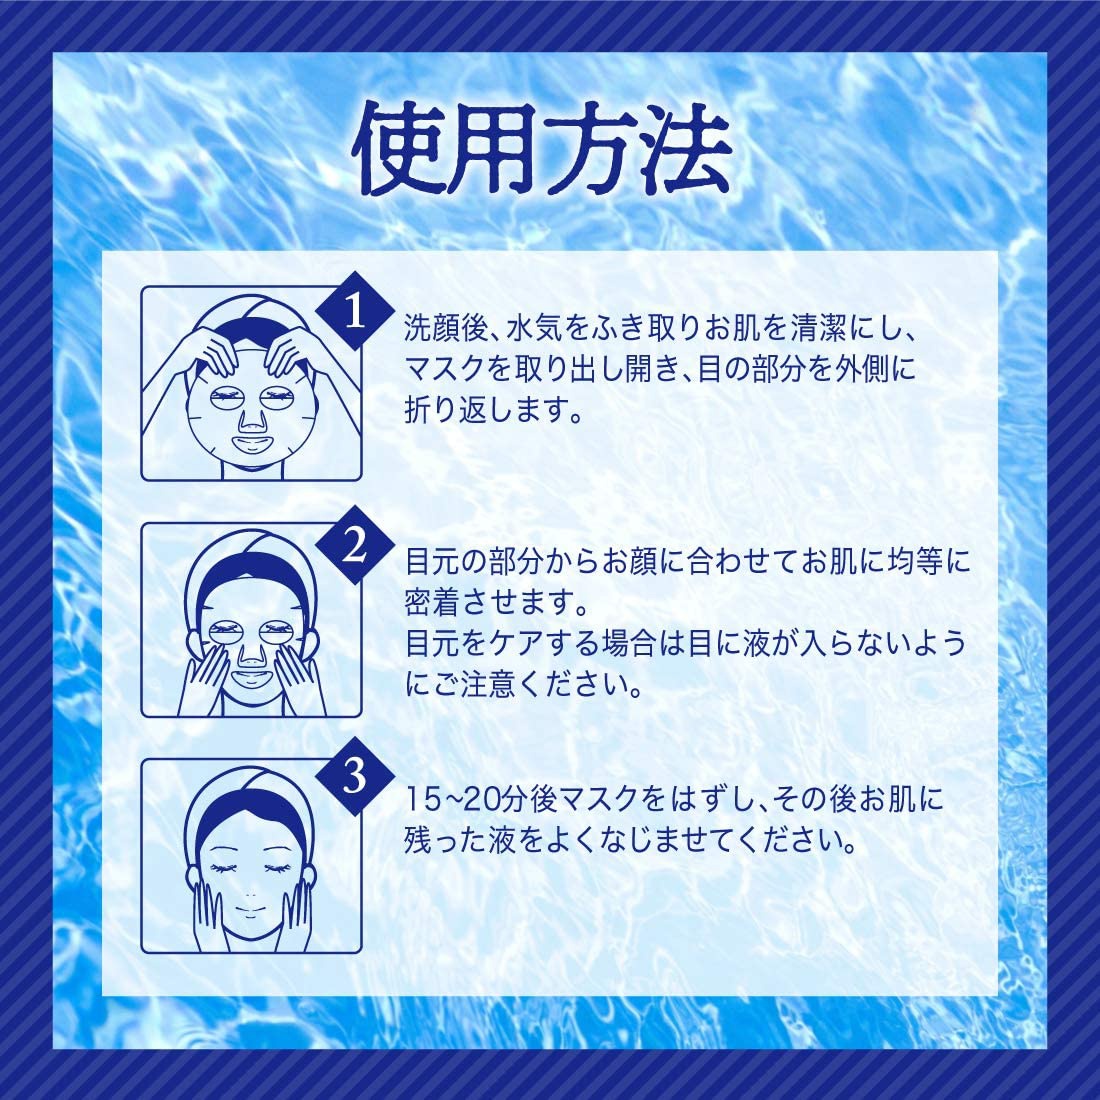 SHONAN COSMETICS(ショウナンコスメティックス) ハトムギ 高保湿マスクの商品画像7 